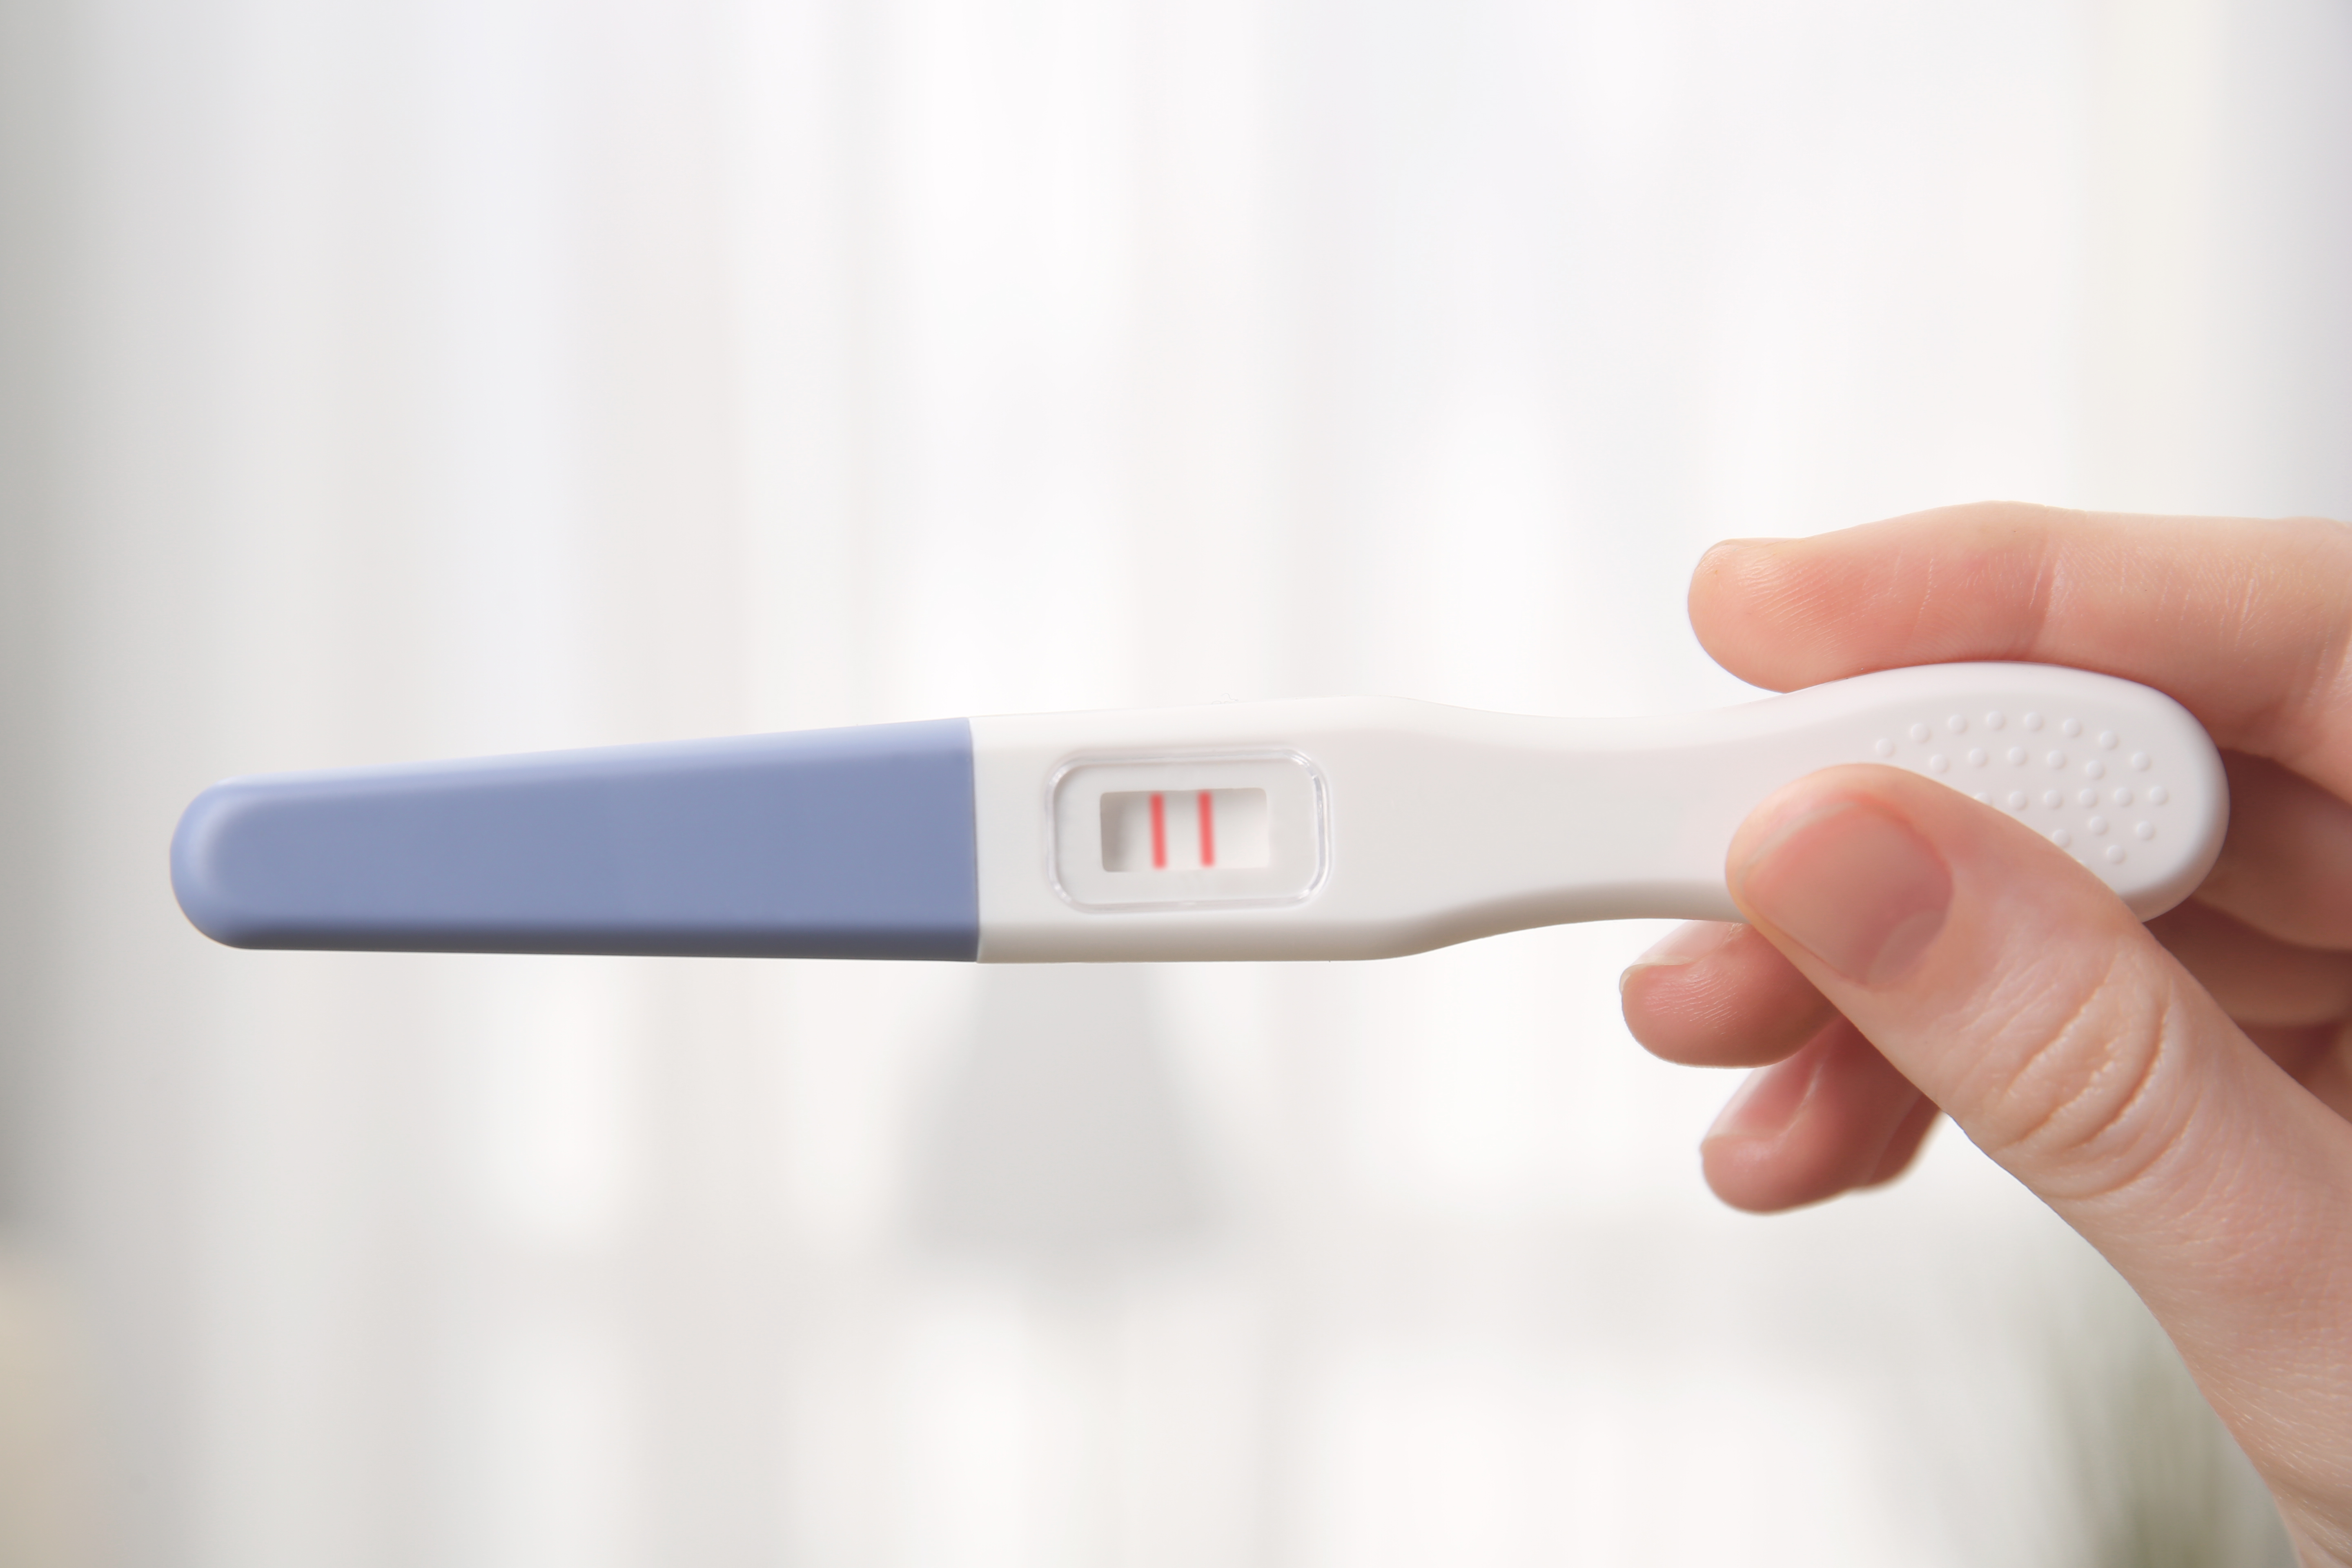 Prueba de embarazo en mano femenina sobre fondo borroso. | Fuente: Shutterstock